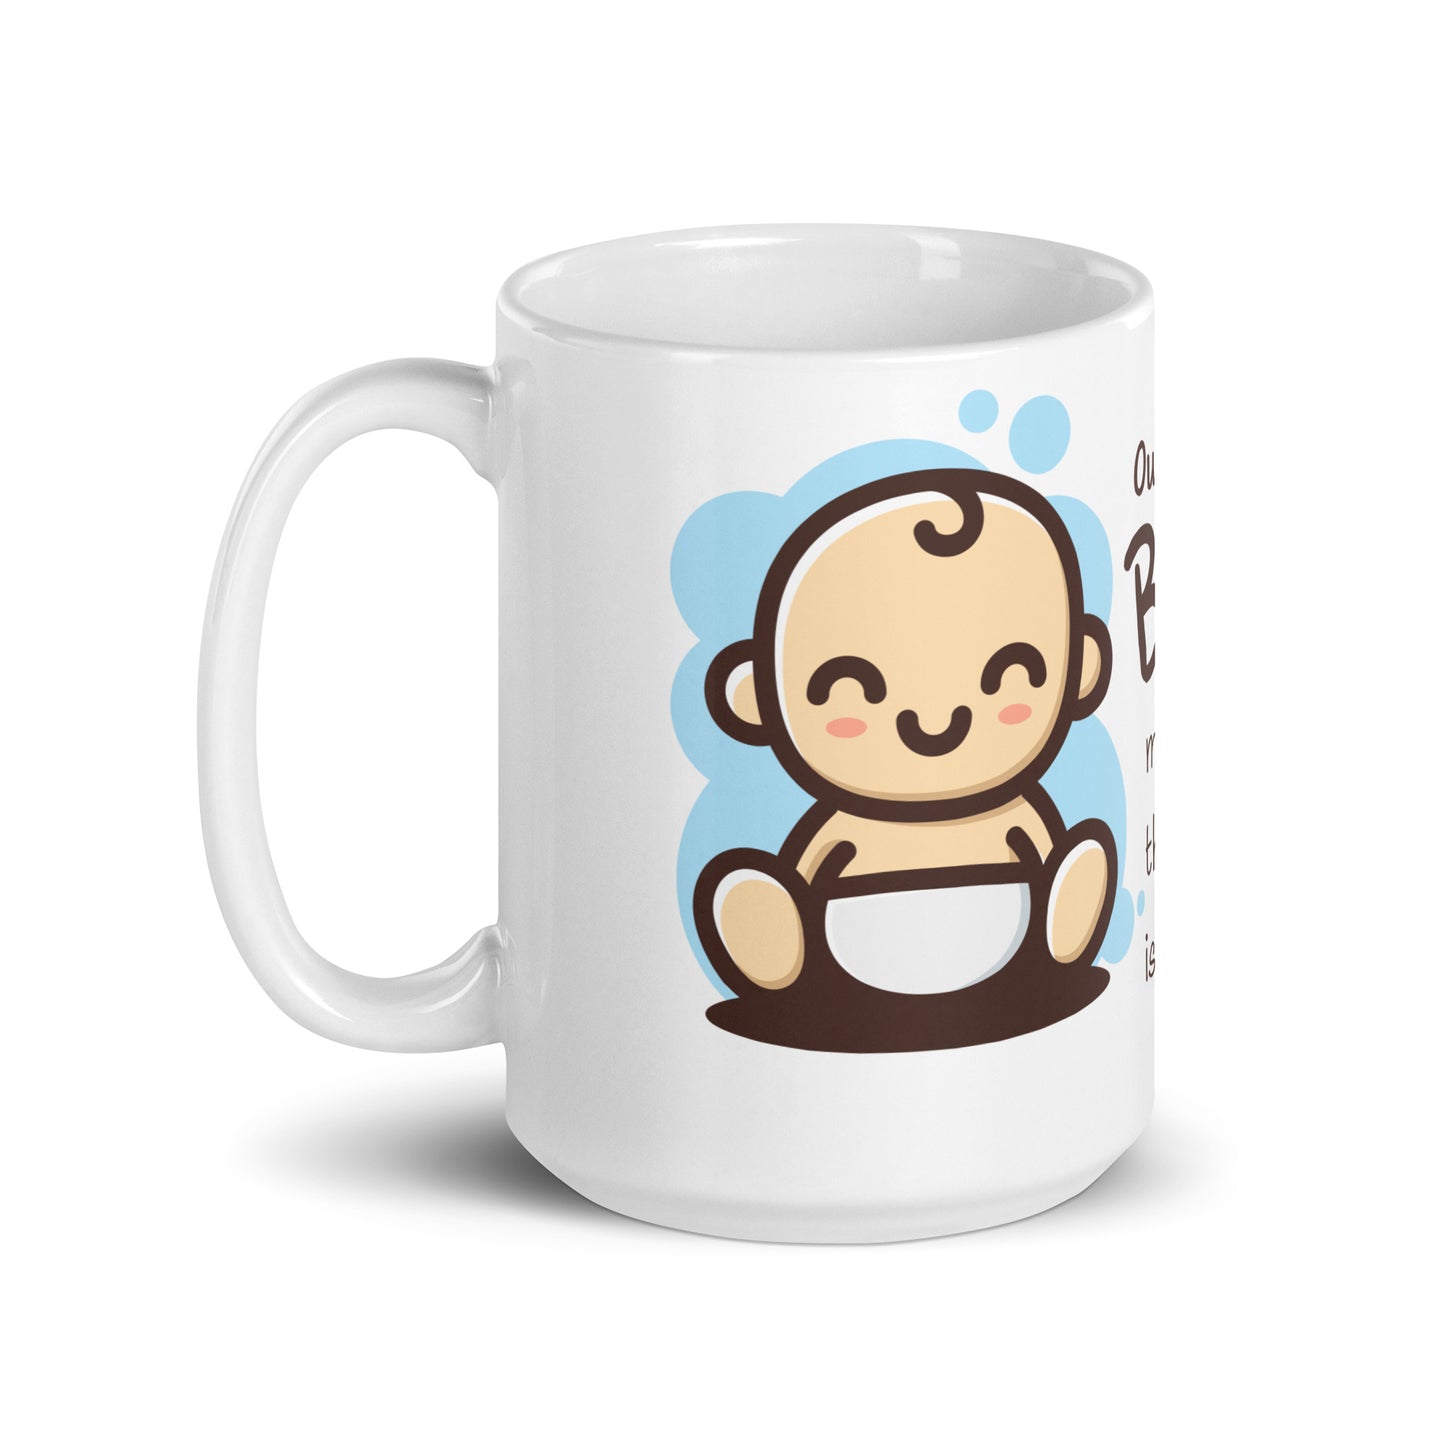 NICU coffee mug